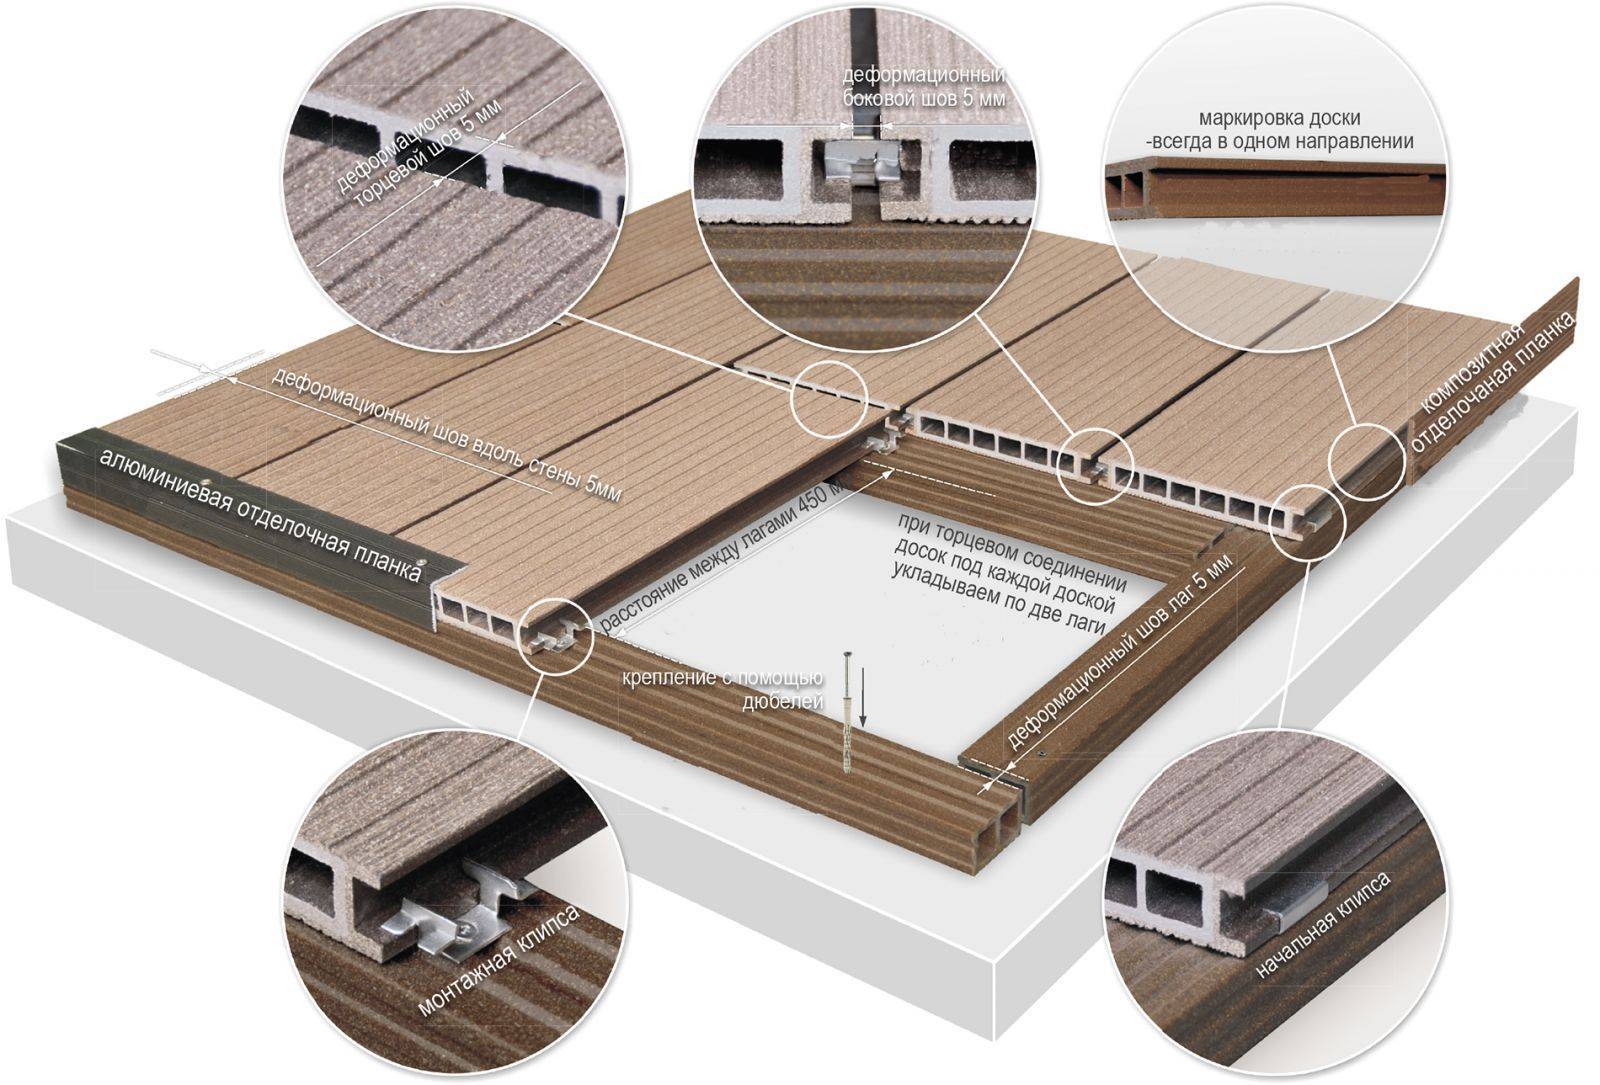 Деревянная терраса вокруг бассейна: проект, подготовительные этапы и укладка своими руками